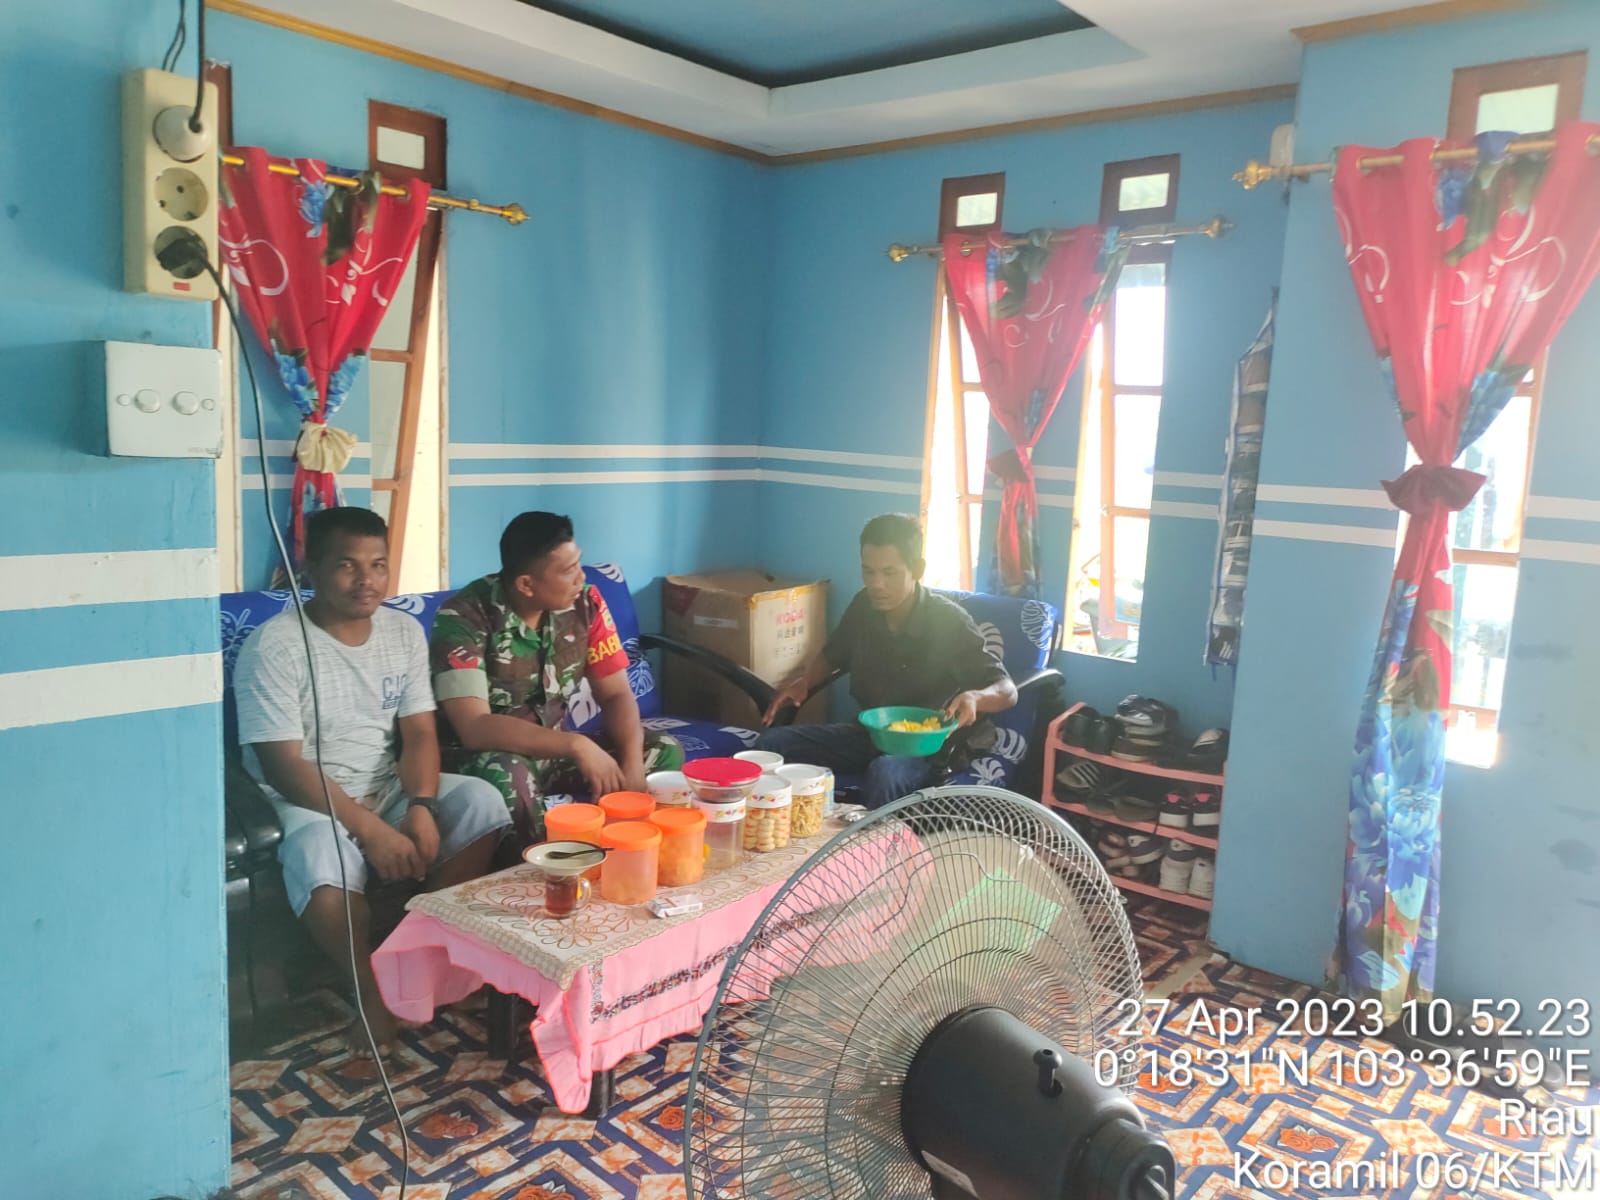 Memfaatkan Suasana Idul Fitri, Babinsa Koramil 06/KTM Jalin Silaturahmi dengan Warga Binaan 